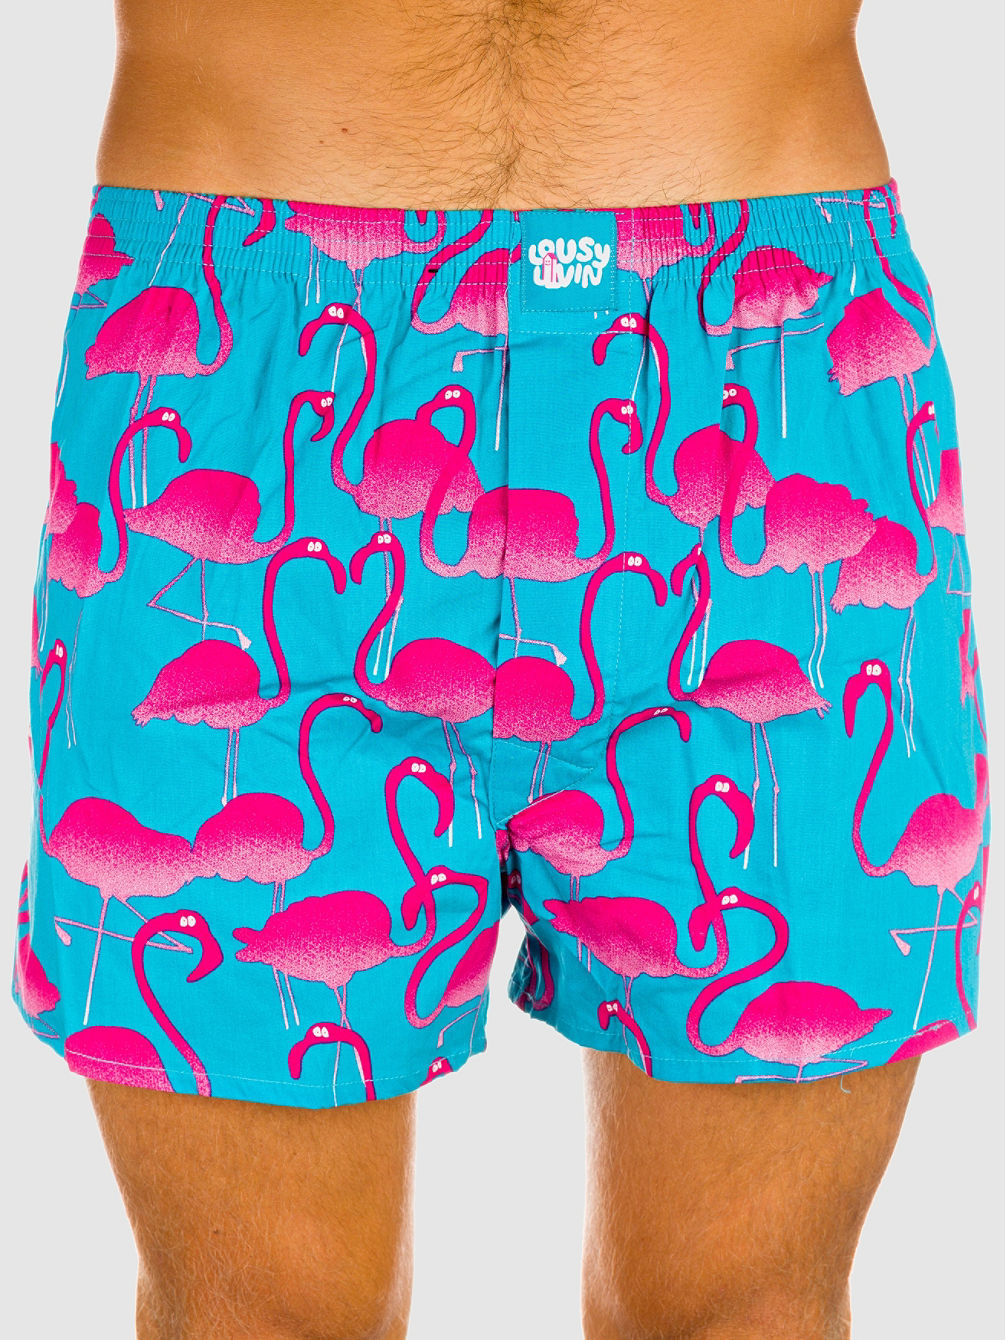 Flamingo Boksershorts